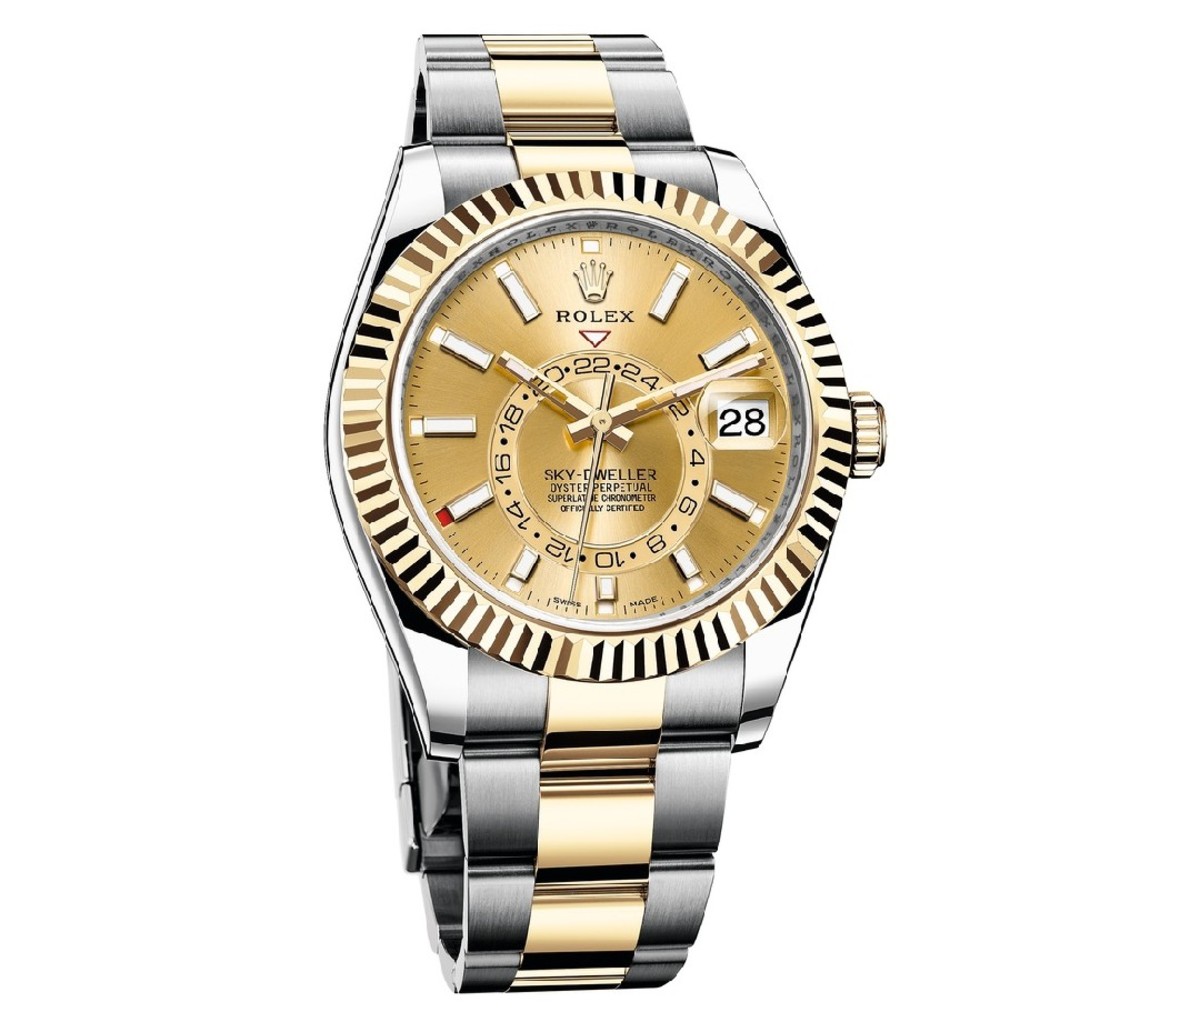 A Rolex Sky-Dweller watch.